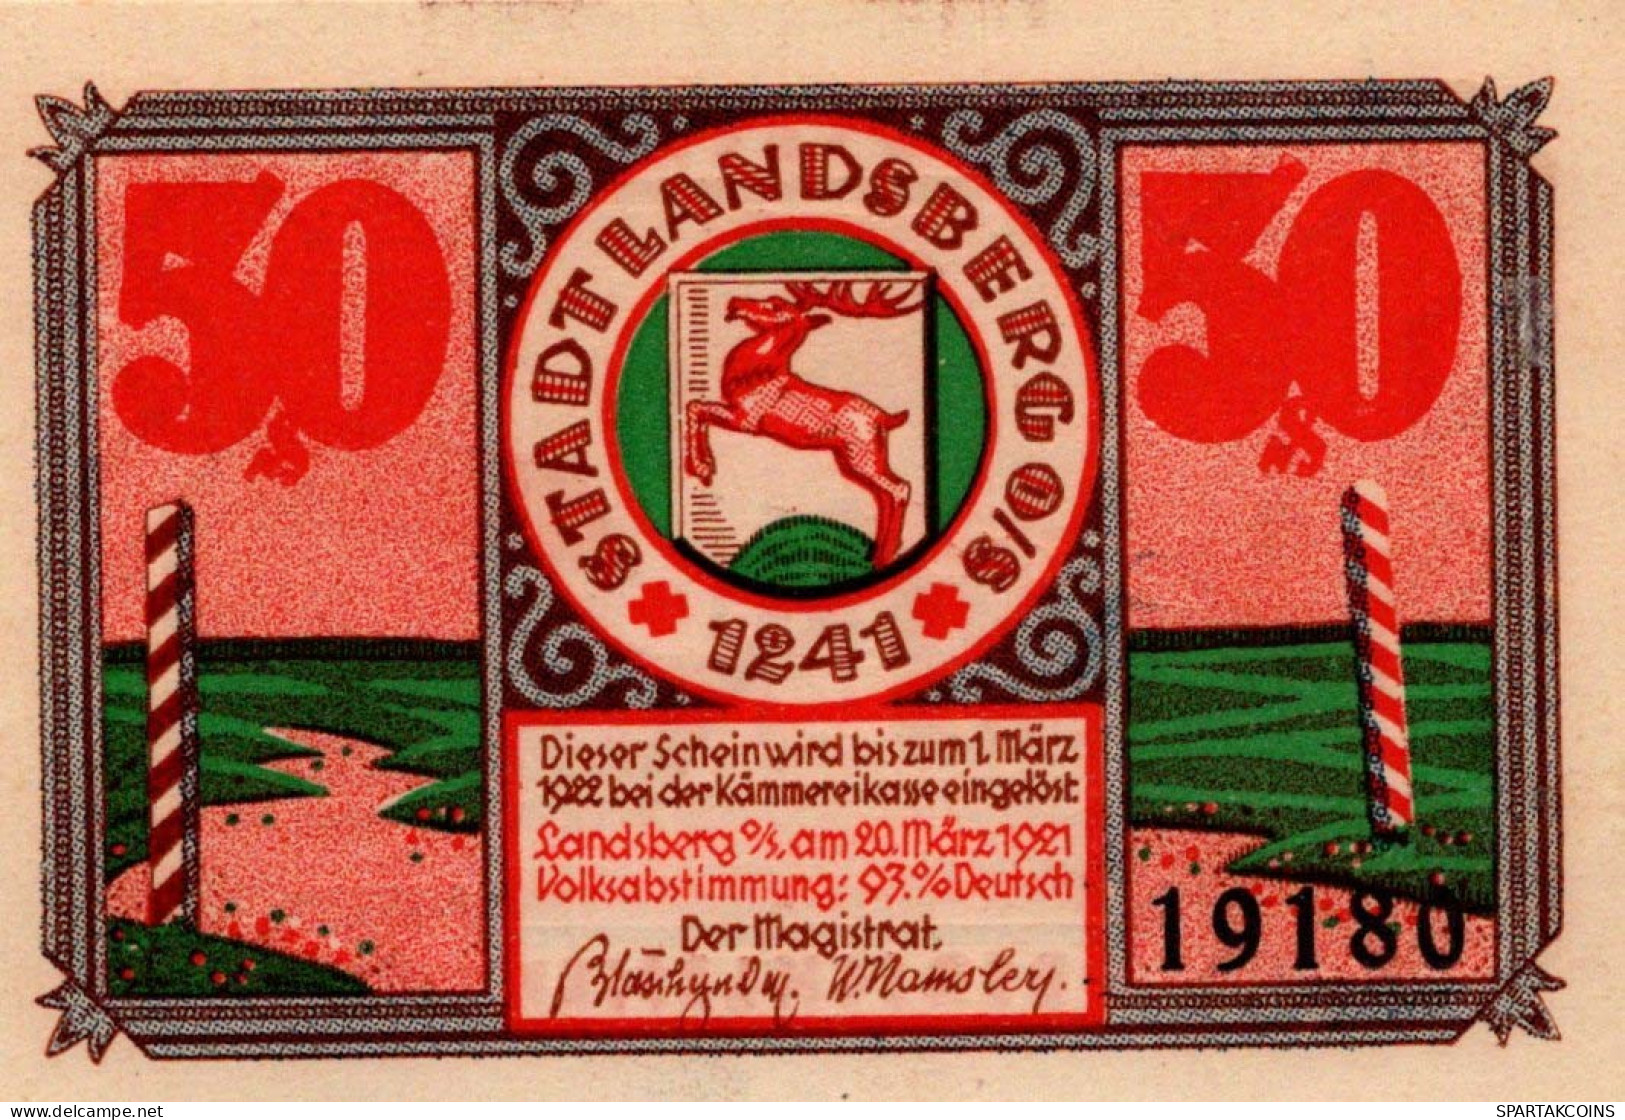 50 PFENNIG 1922 Stadt LANDSBERG OBERSCHLESIEN UNC DEUTSCHLAND #PB927 - [11] Local Banknote Issues